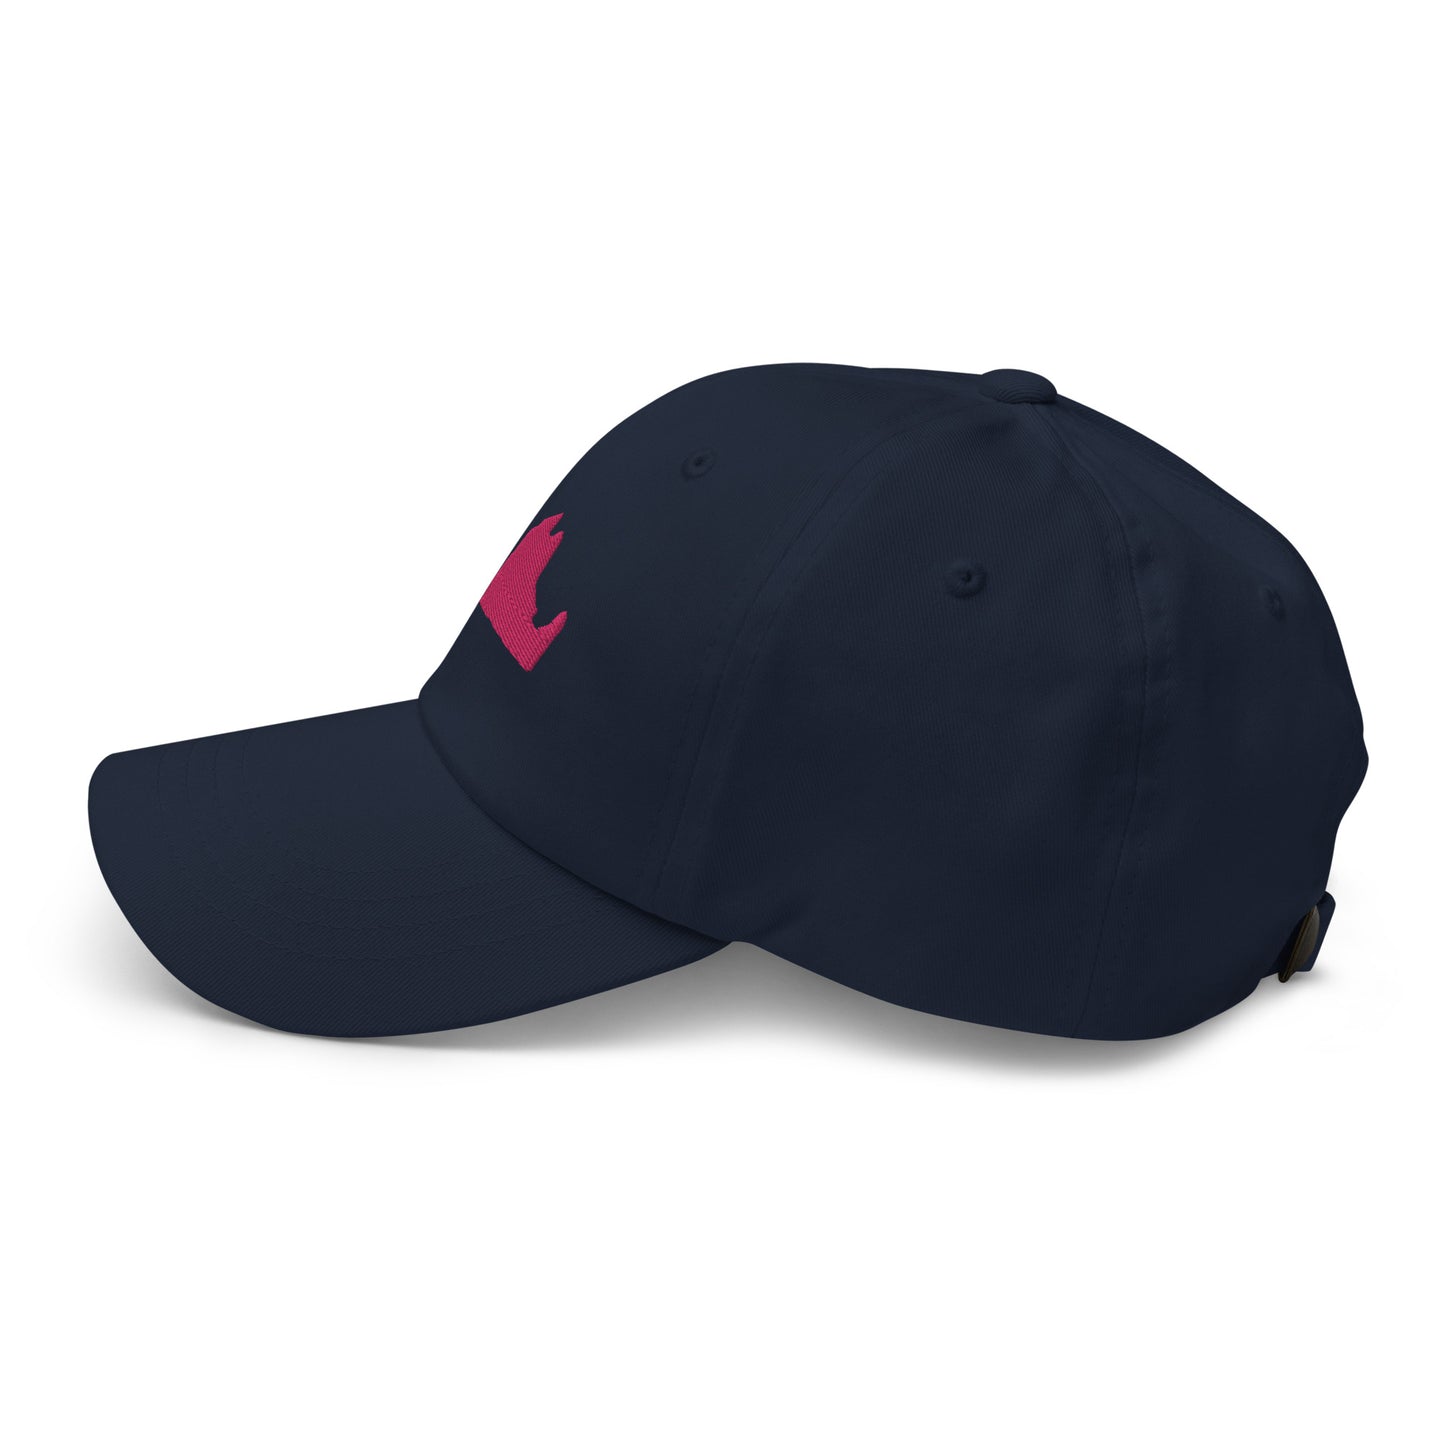 Martha's Vineyard Dad Hat - Pink on Navy